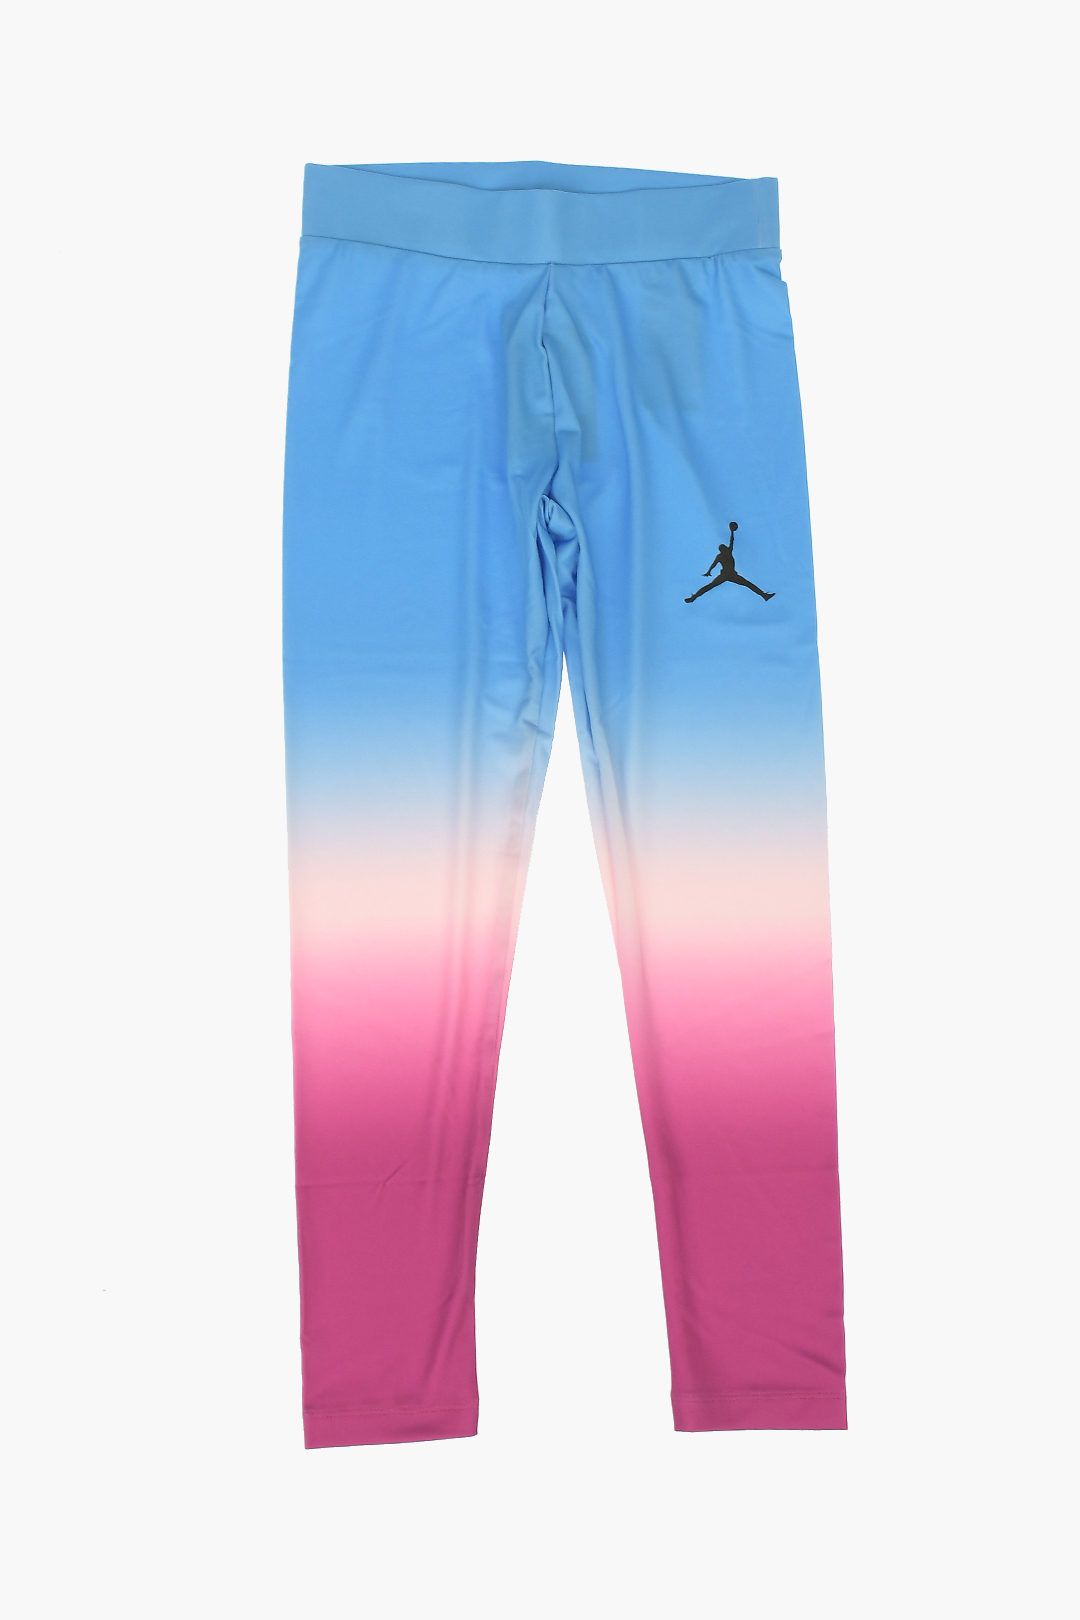 Nike KIDS AIR JORDAN Stretch Cotton Printed Leggings girls - Glamood Outlet